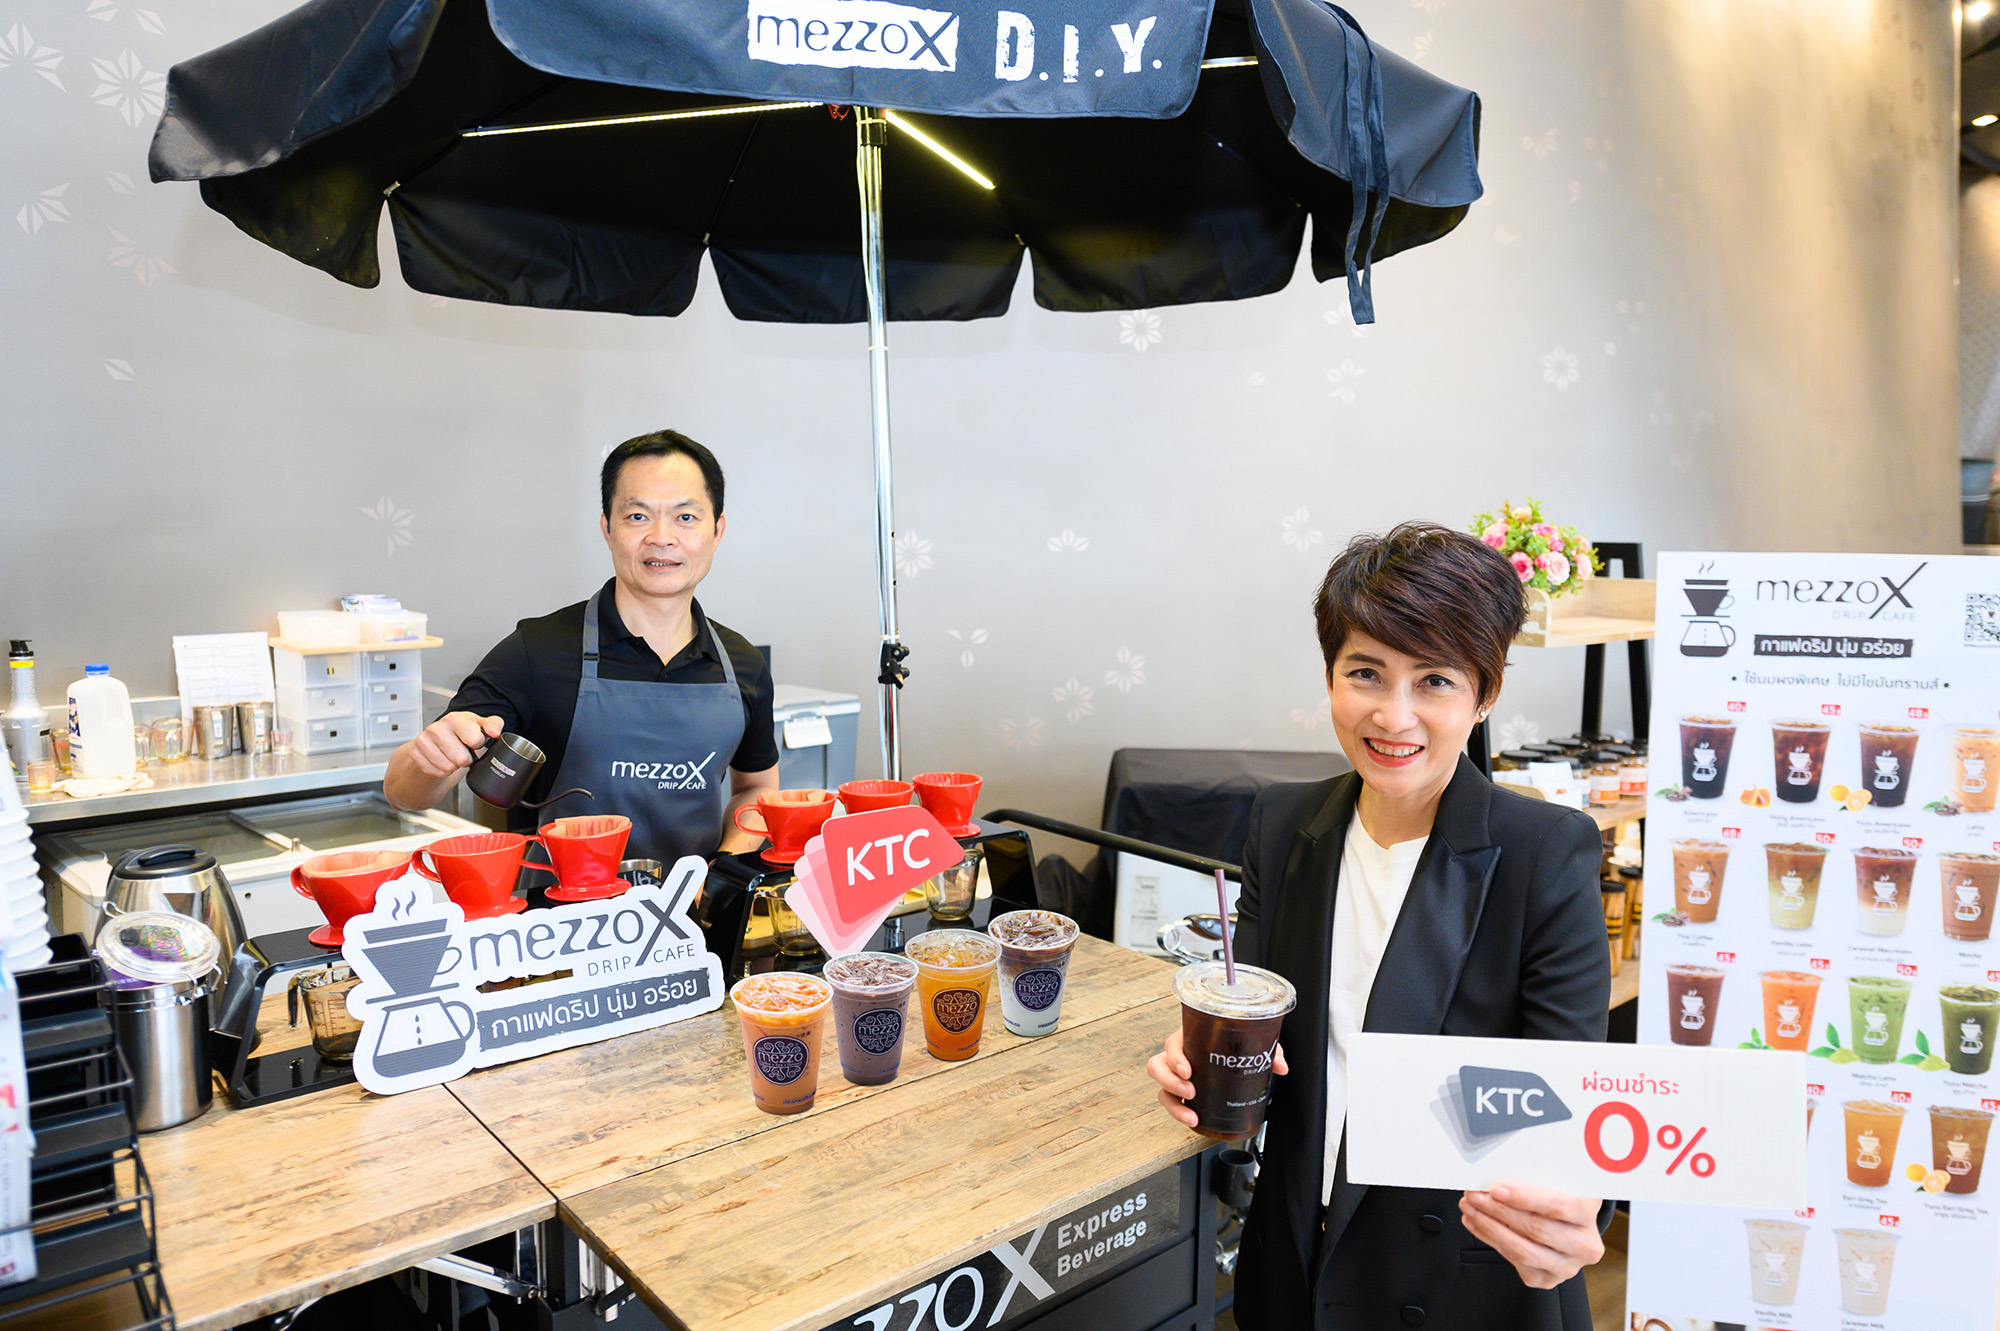 เคทีซีจับมือร้านกาแฟดริปแบรนด์ใหม่ MezzoX Drip Cafe ปล่อยสินเชื่อดอกเบี้ย 0% ขยายแฟรนไชส์ทั่วประเทศ